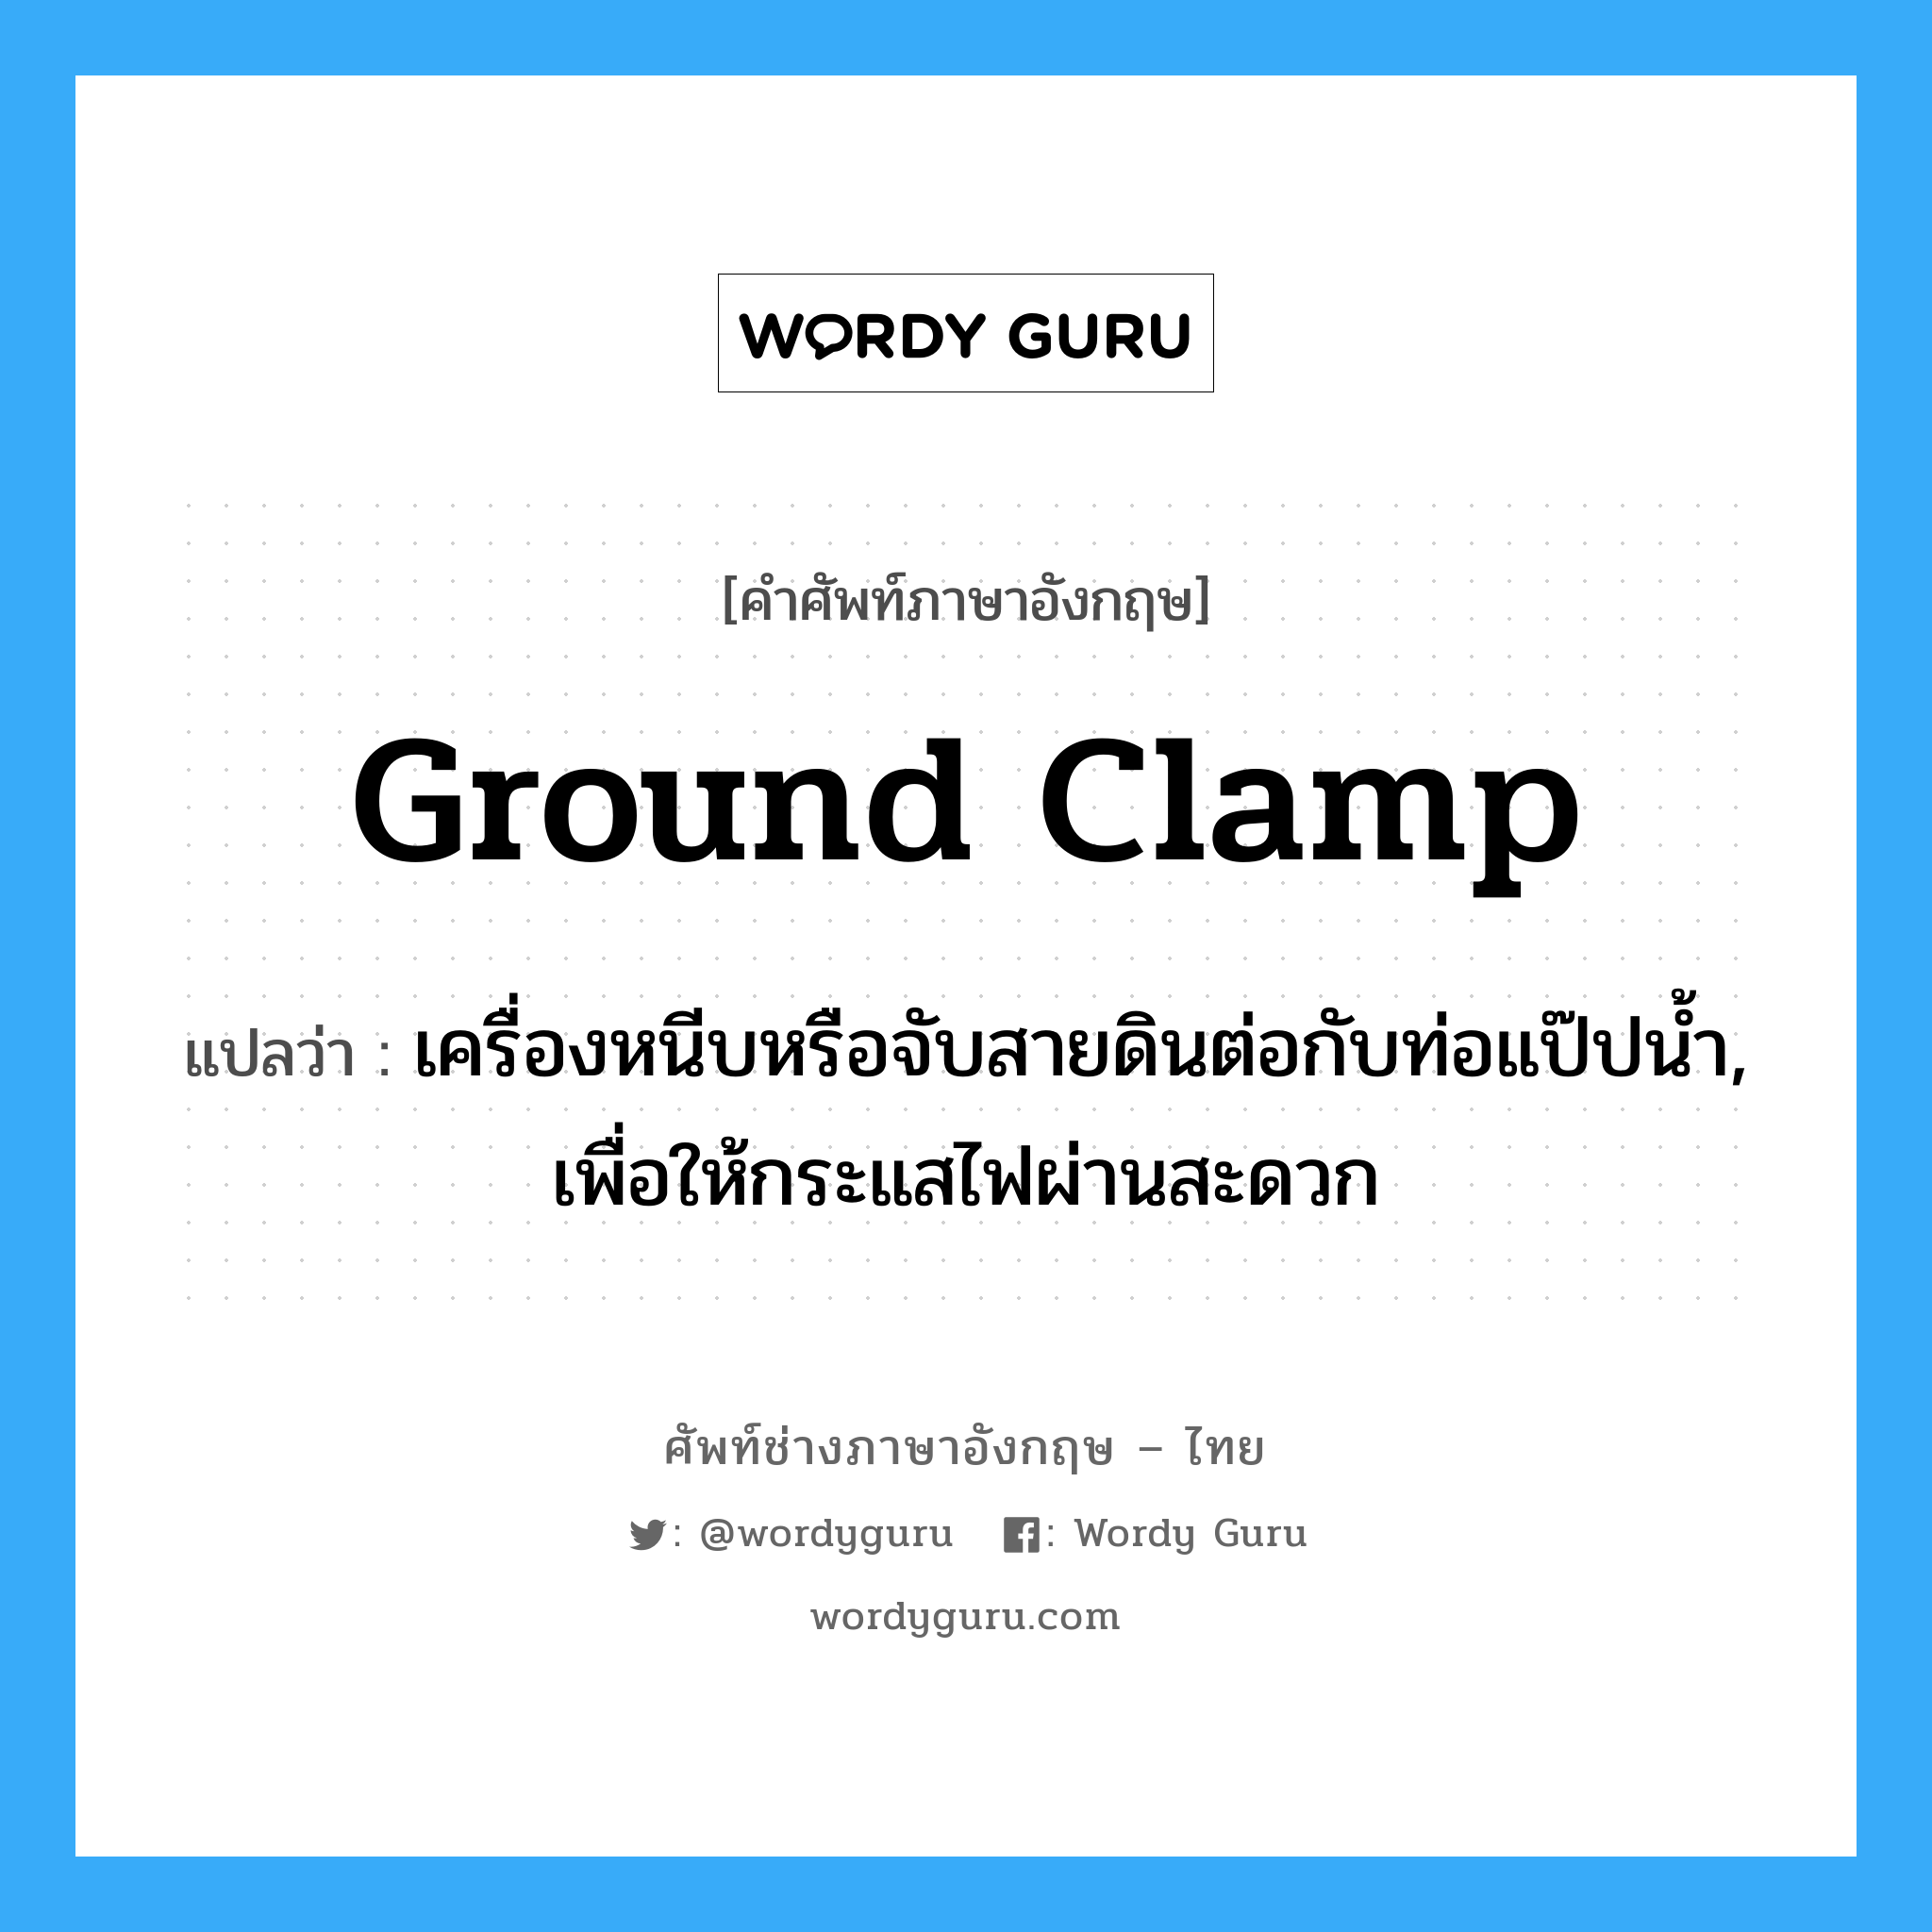 ground clamp แปลว่า?, คำศัพท์ช่างภาษาอังกฤษ - ไทย ground clamp คำศัพท์ภาษาอังกฤษ ground clamp แปลว่า เครื่องหนีบหรือจับสายดินต่อกับท่อแป๊ปน้ำ, เพื่อให้กระแสไฟผ่านสะดวก